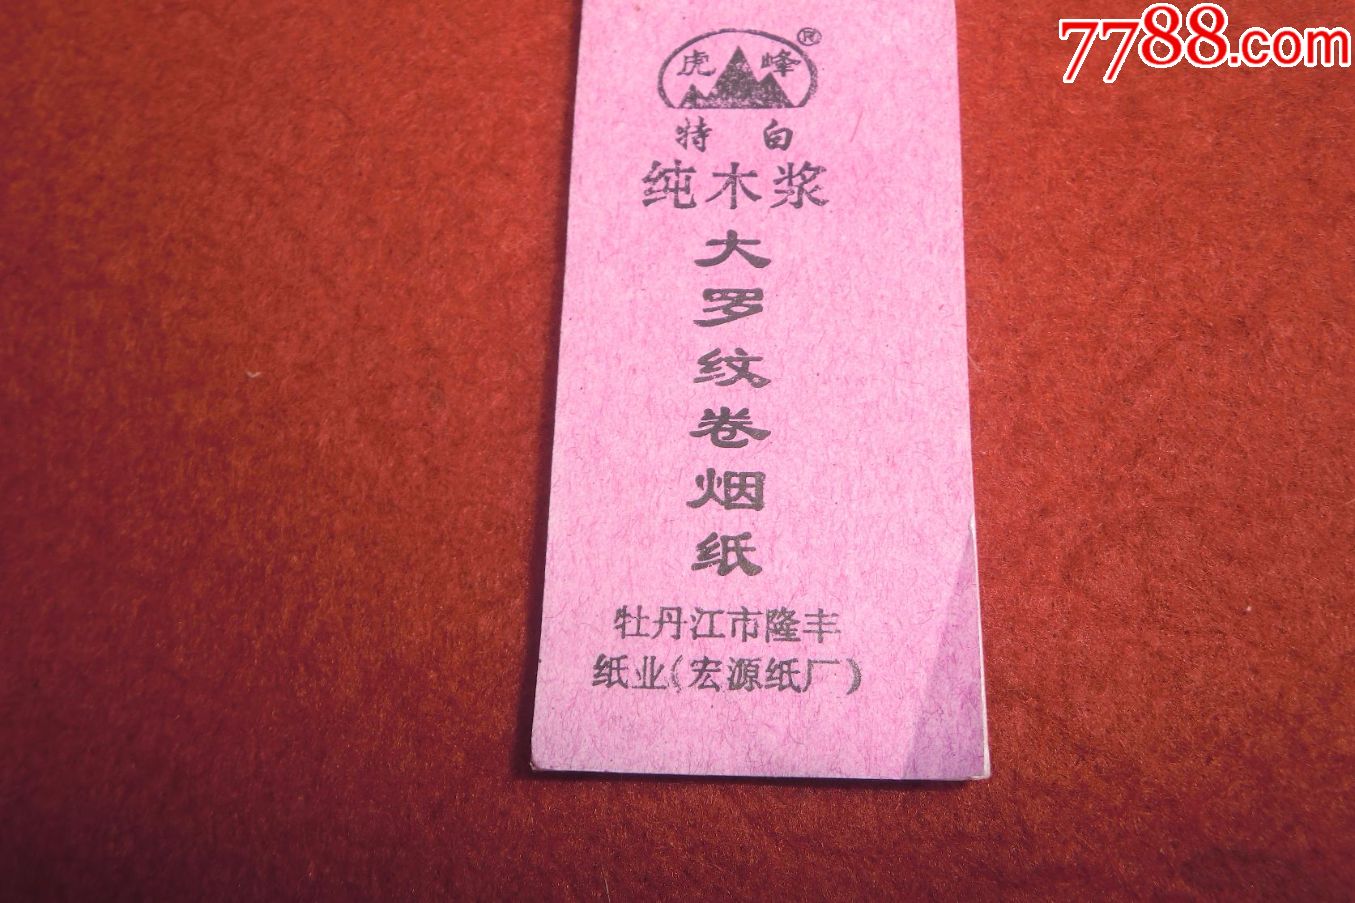 "虎峰"牌:特白纯木浆大罗纹卷烟纸(7本合售)_价格15.